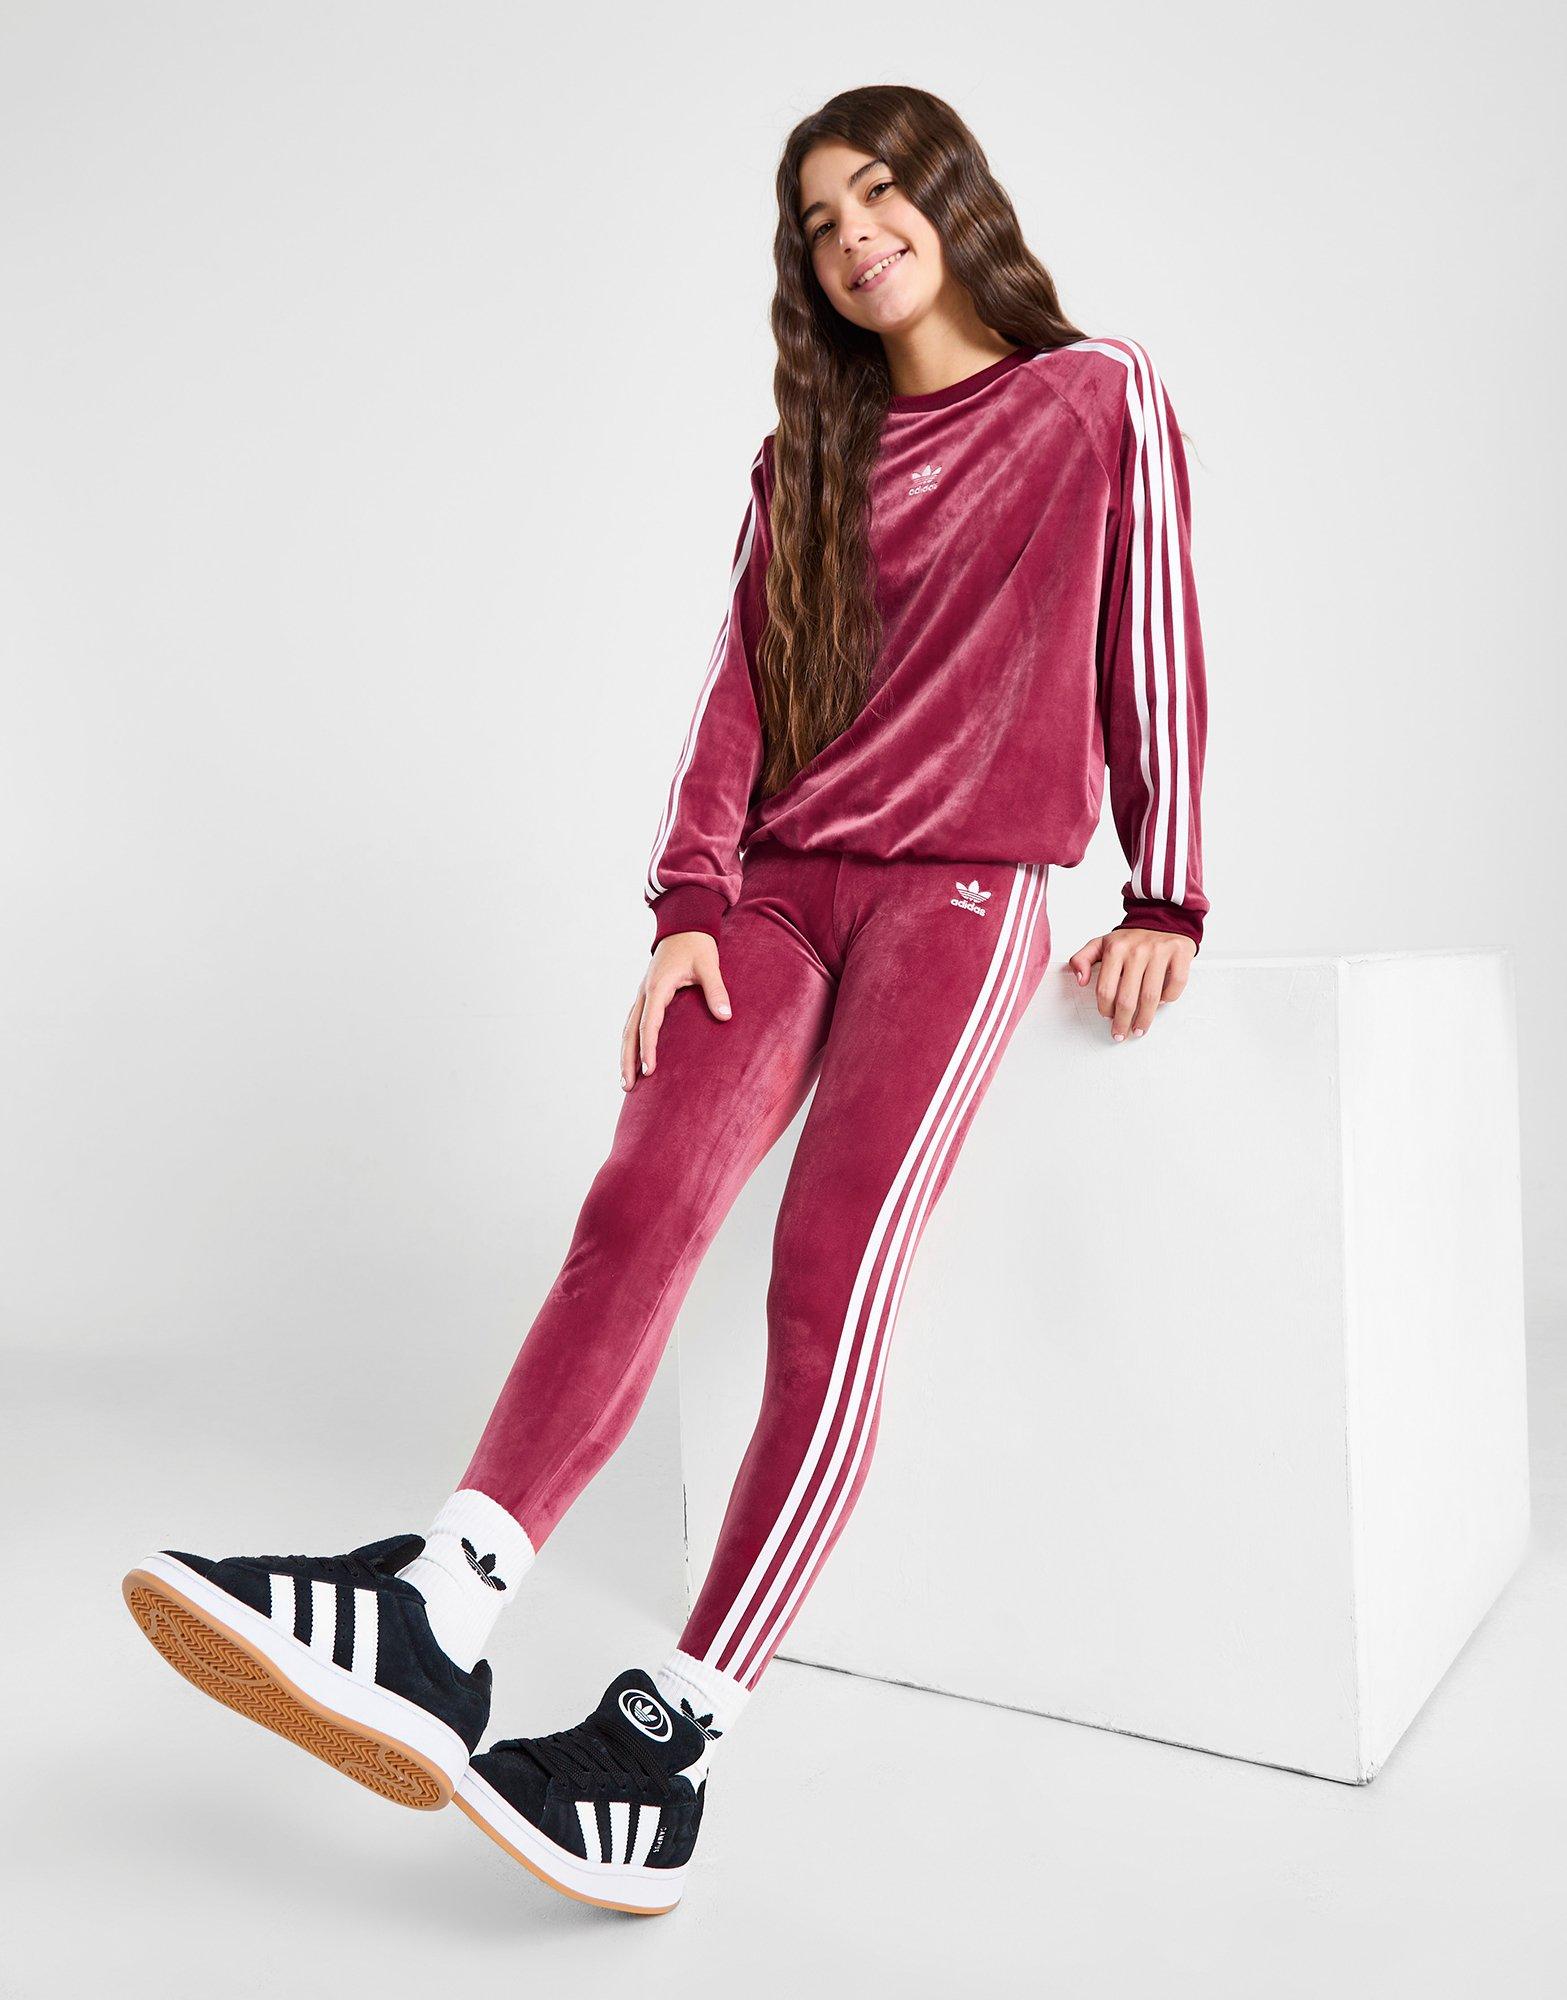 NEW Adidas Women's Trefoil 3 Stripe Logo Leggings - Red - Small